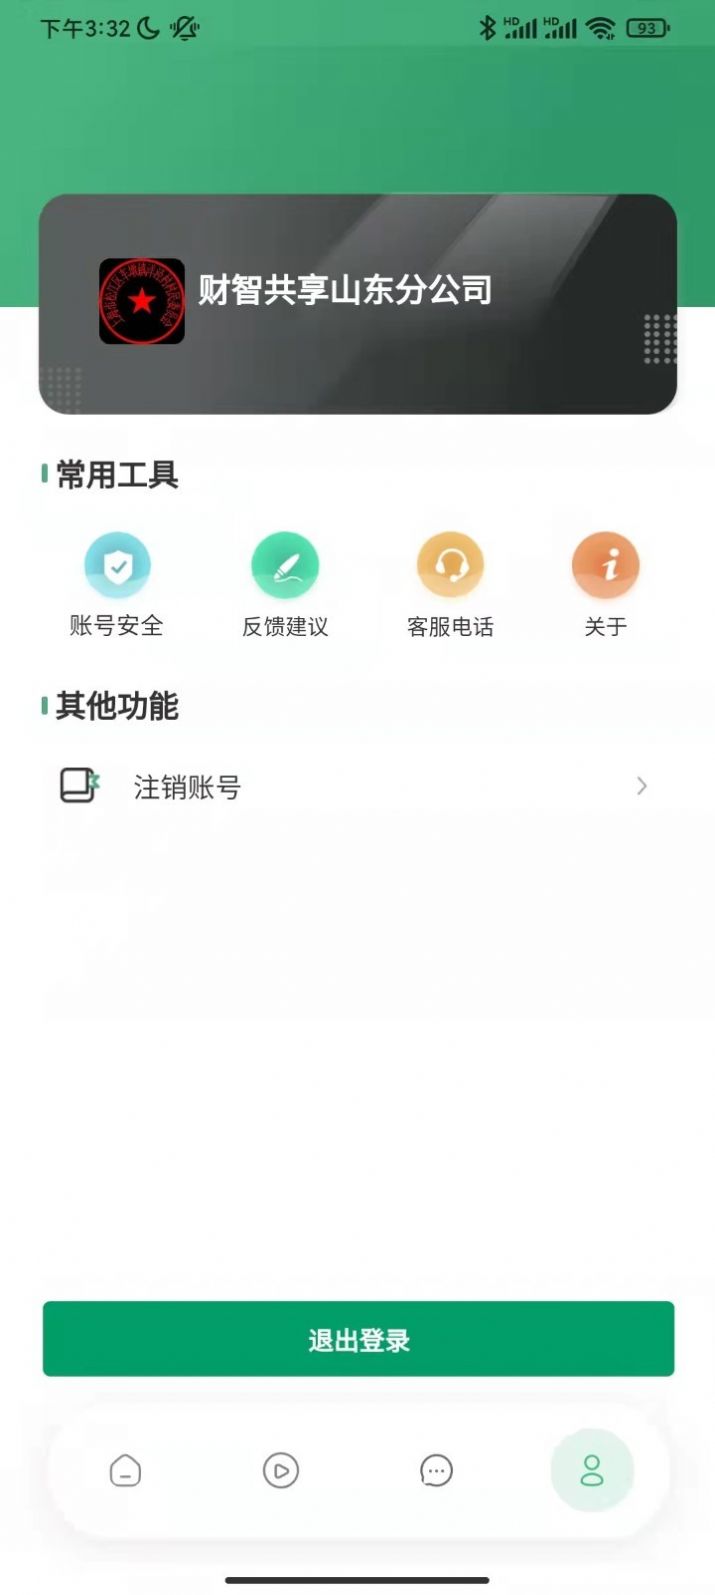 云招企业版app